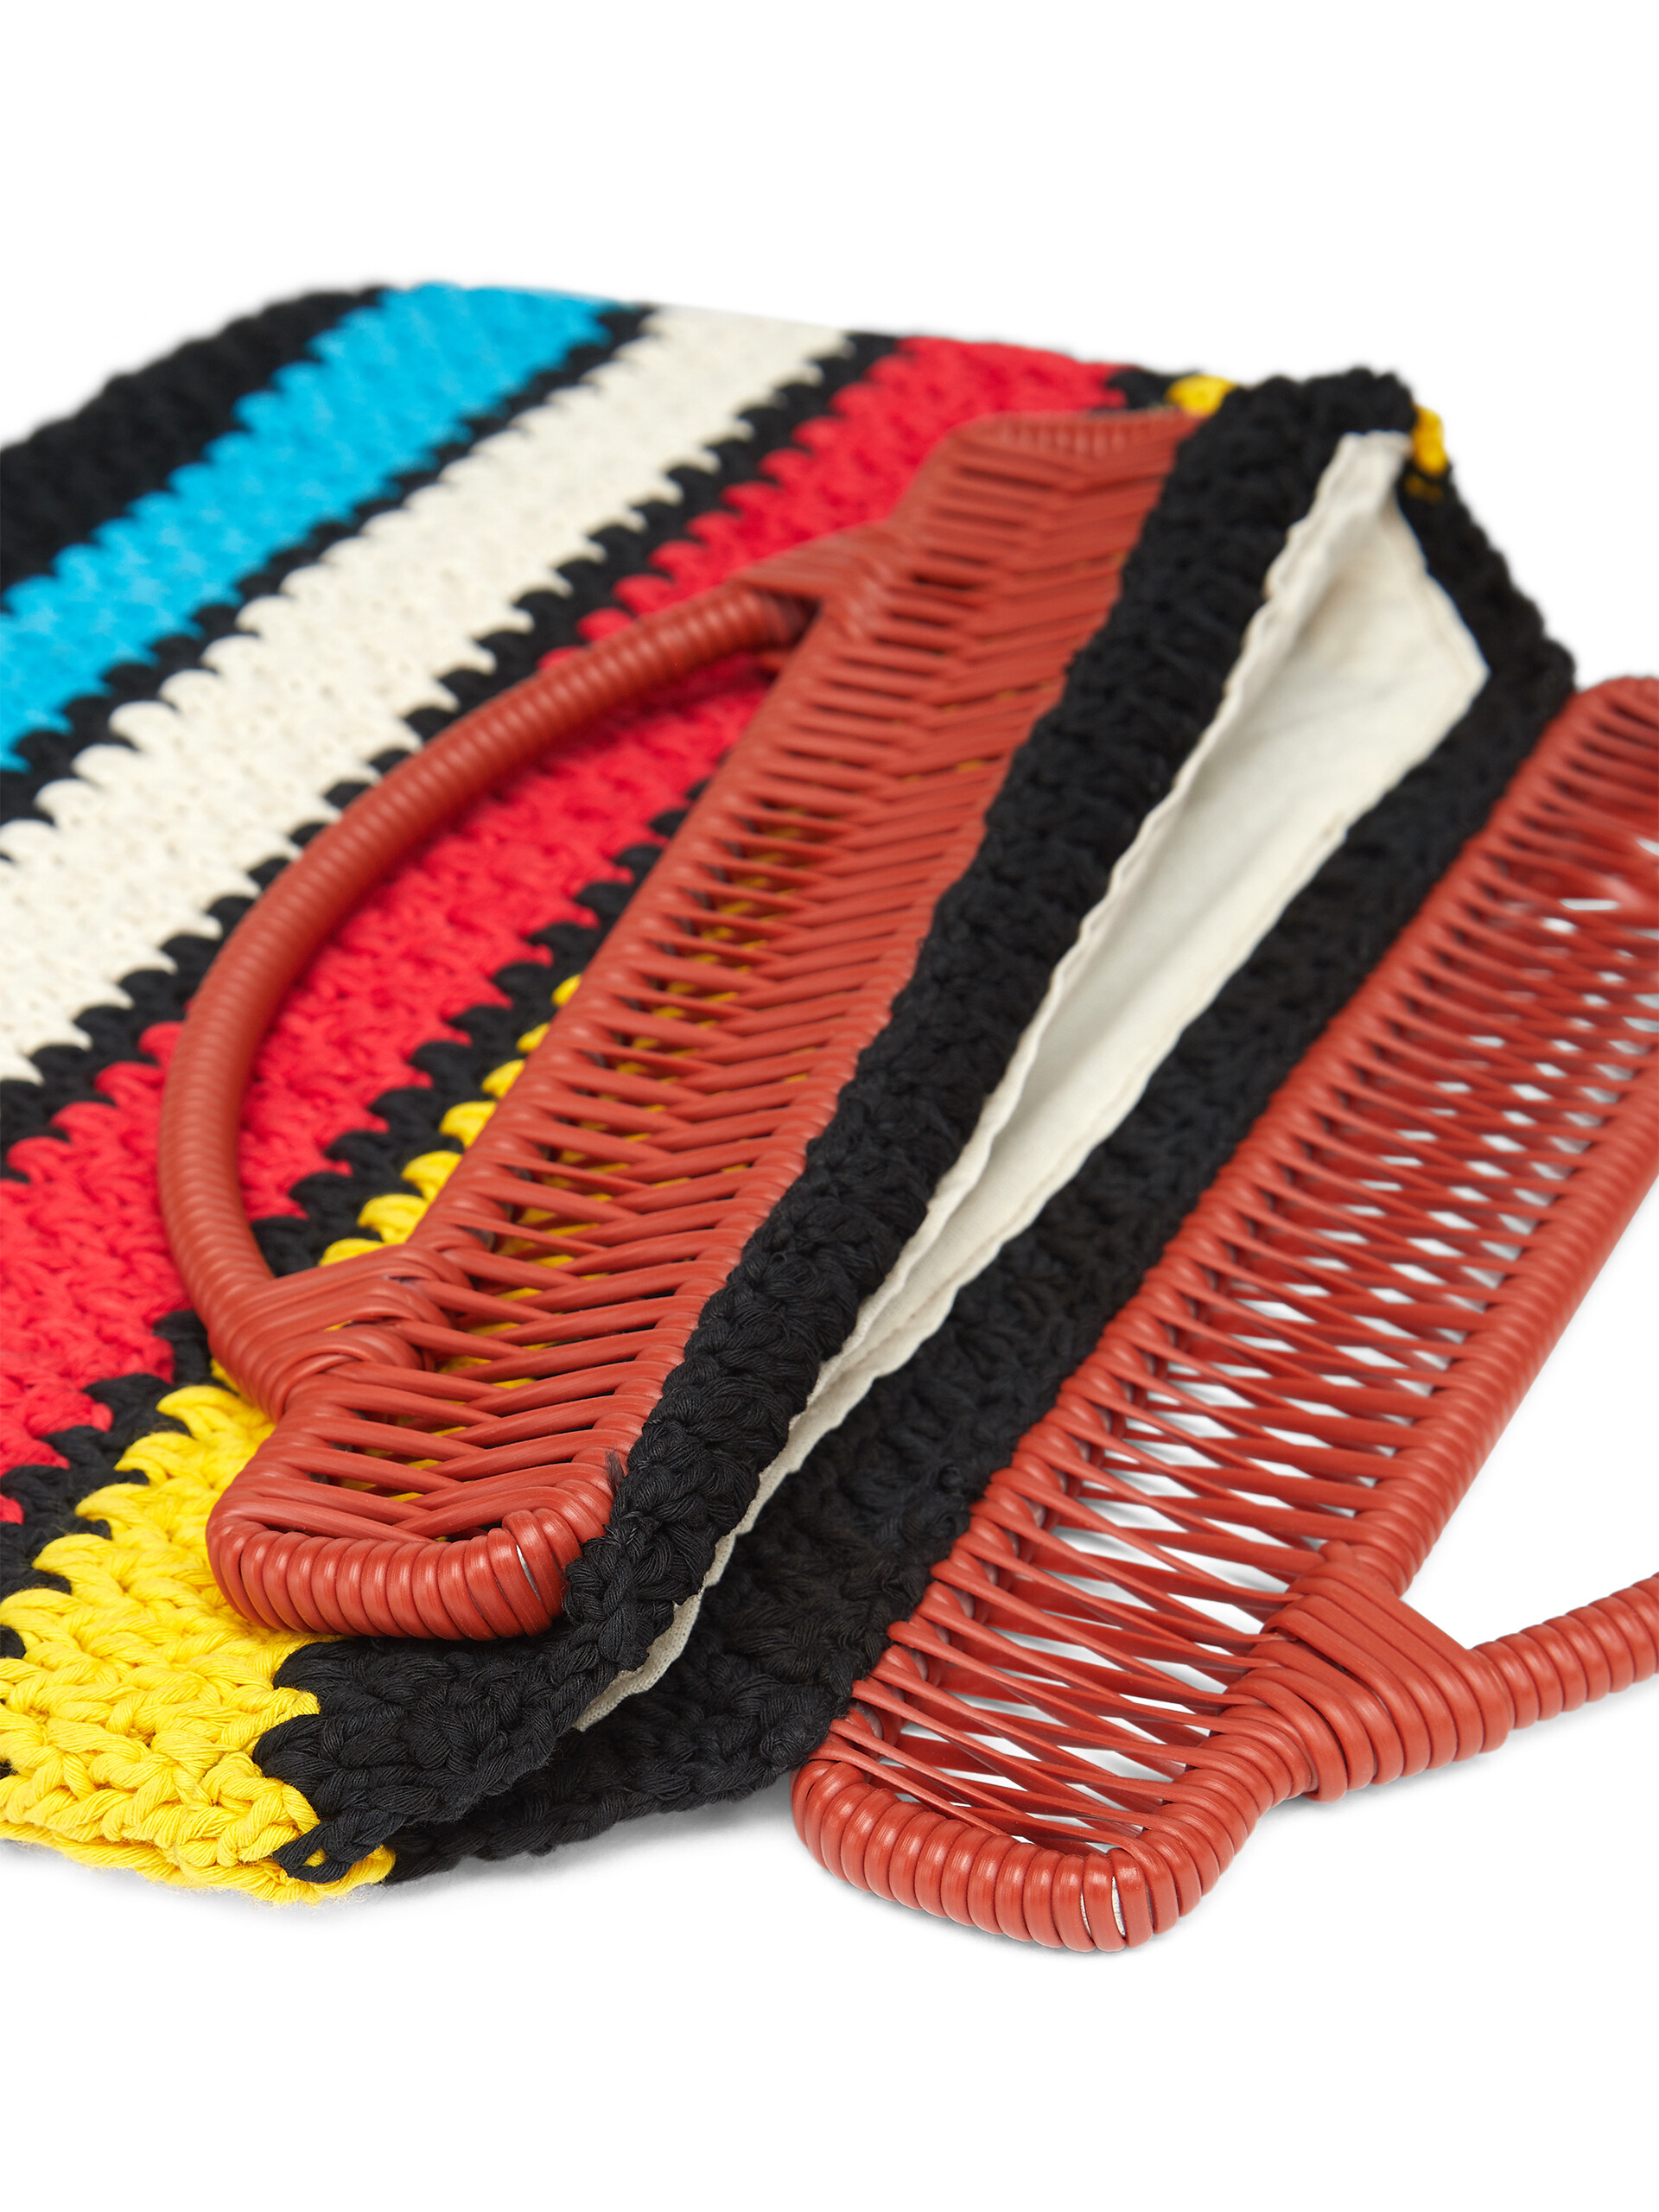 MARNI MARKET bag in multicolor crochet cotton - Furniture - Image 4